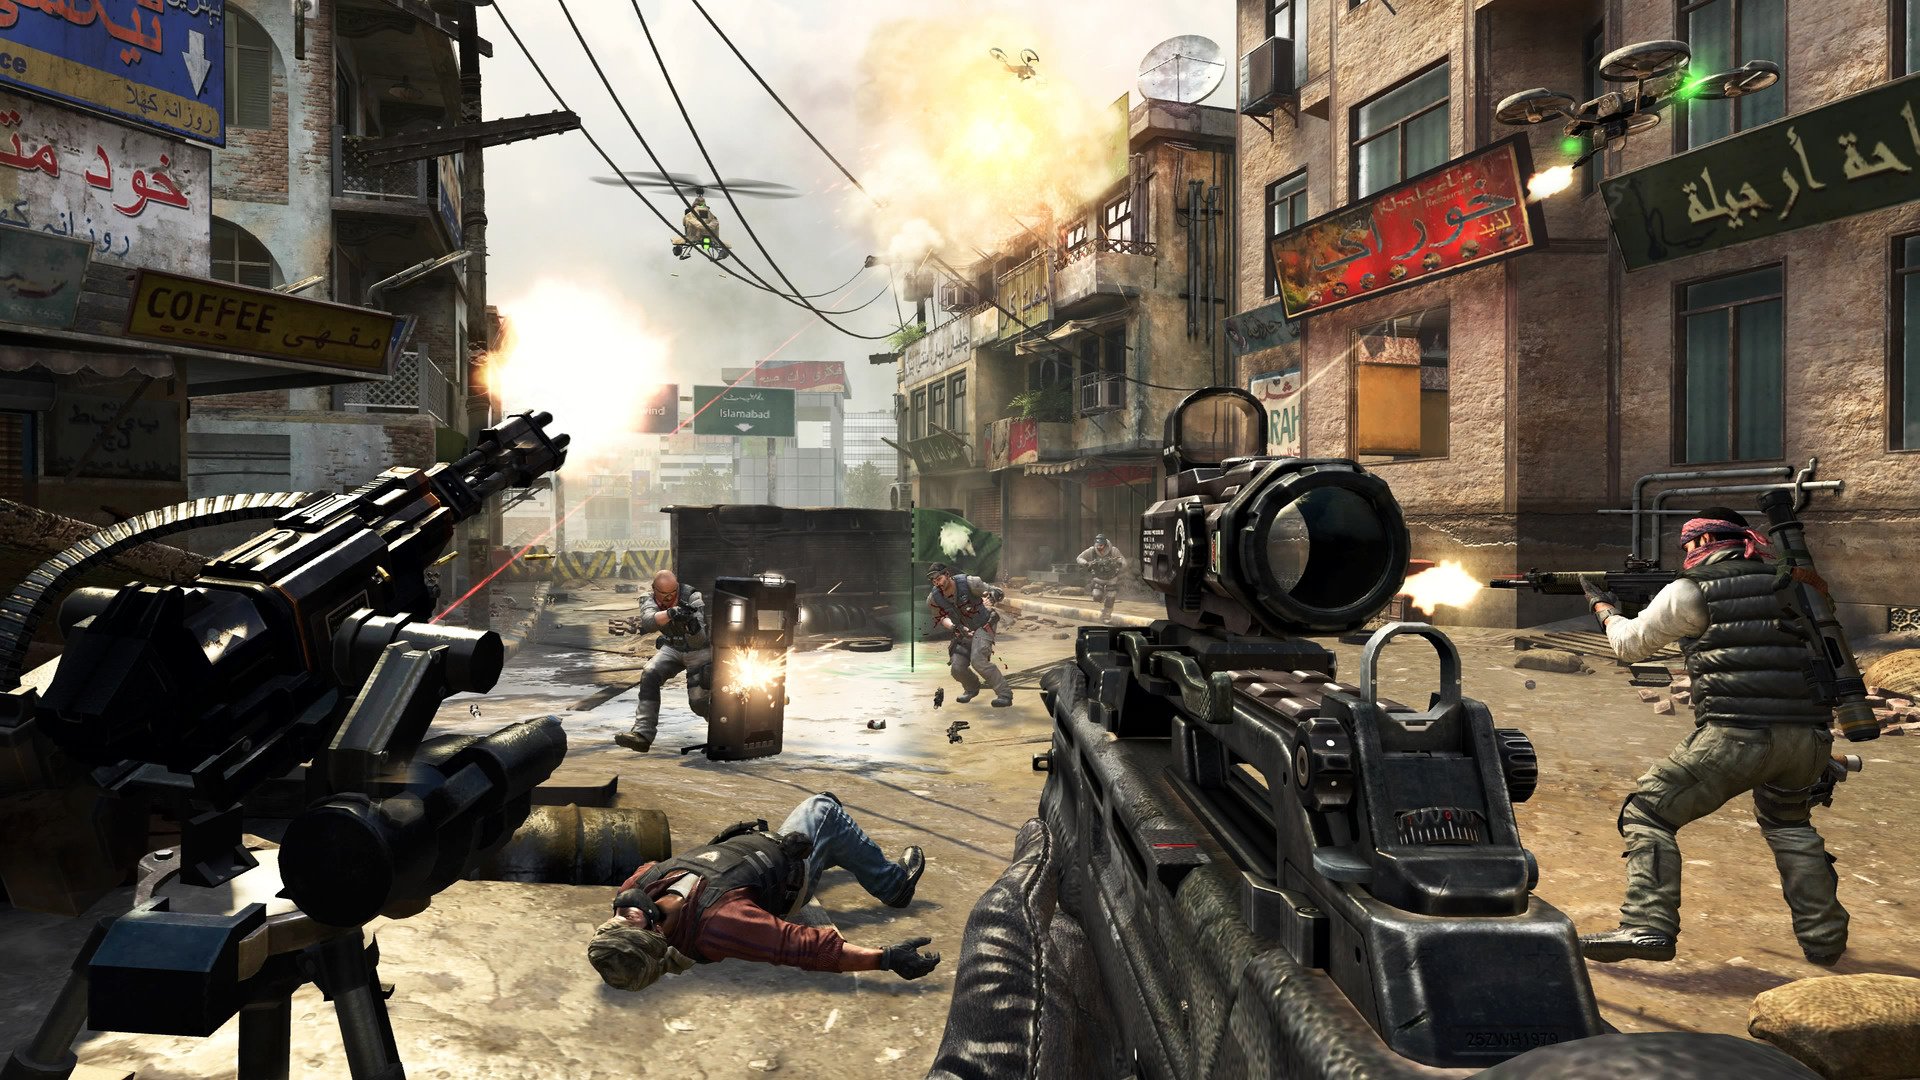 🔥 Call of Duty: Black Ops II (2) (Microsoft Xbox 360, 2012